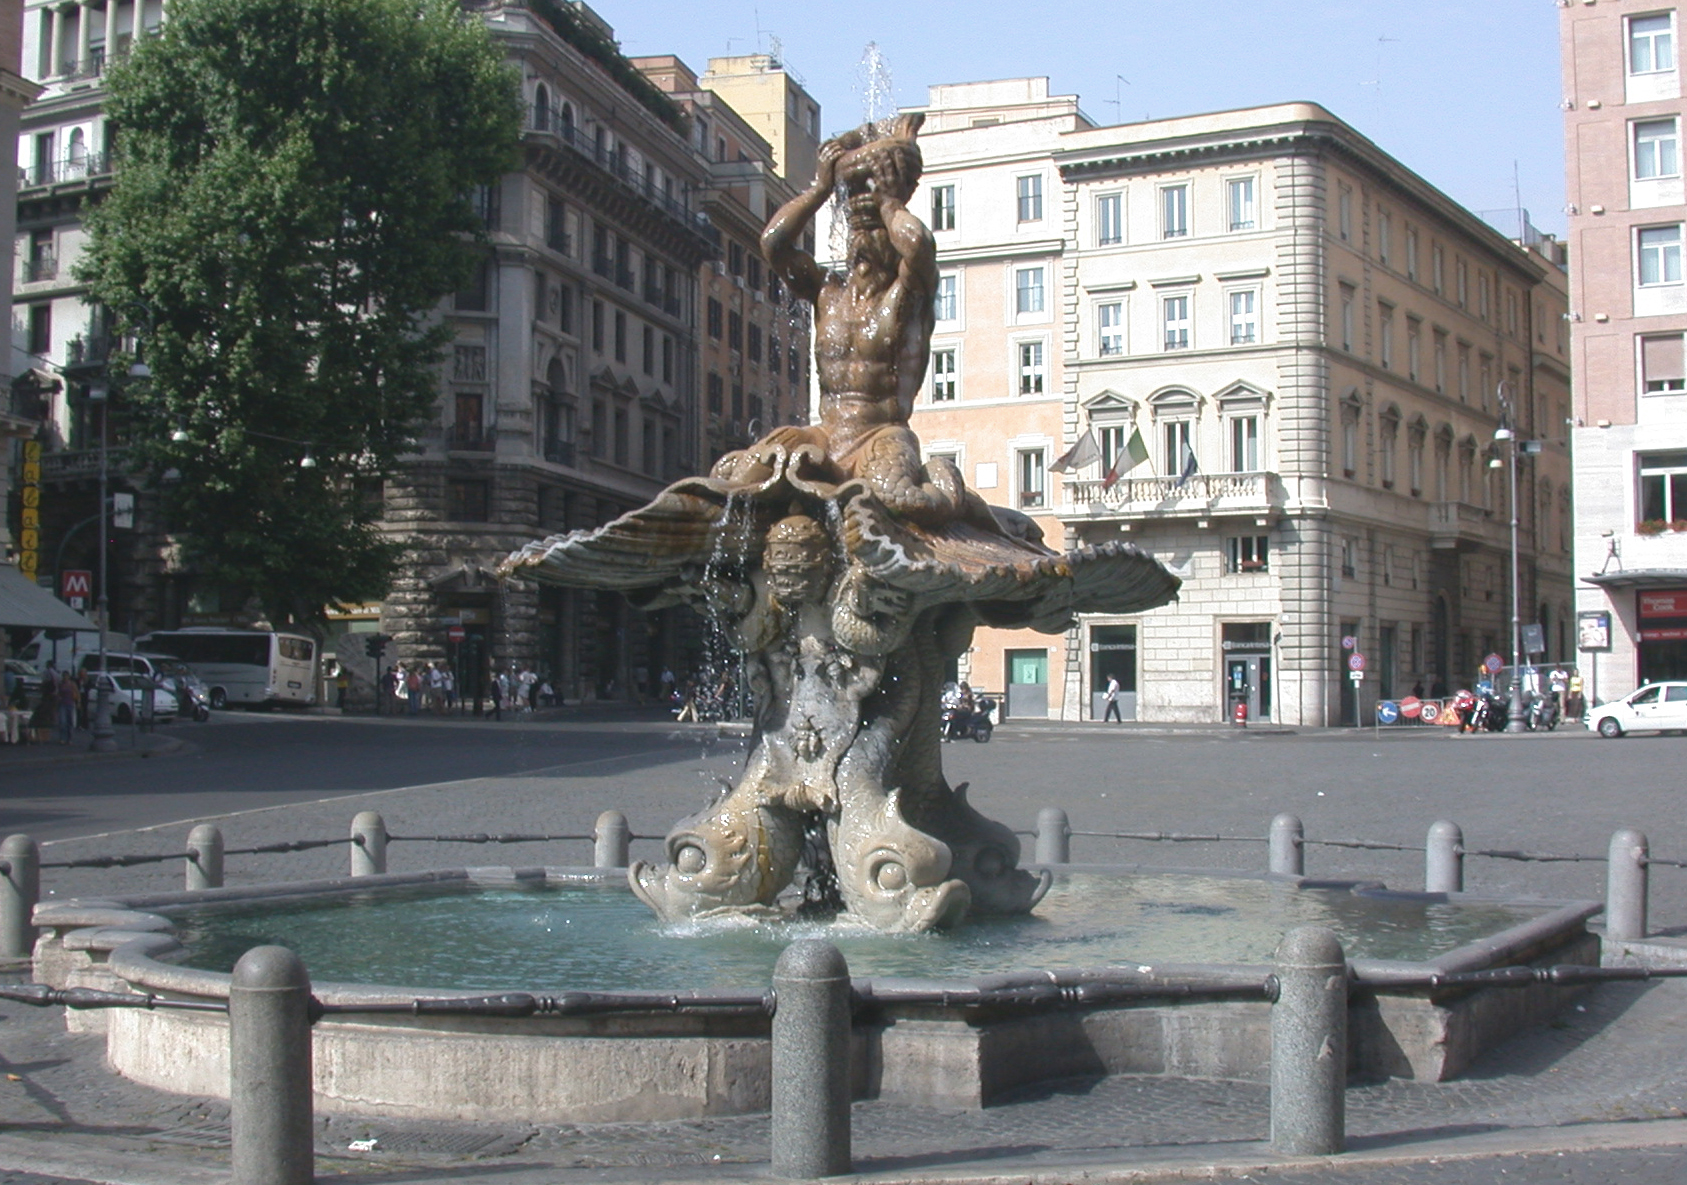 Triton Fountain by Bernini. Piazza Barbarini